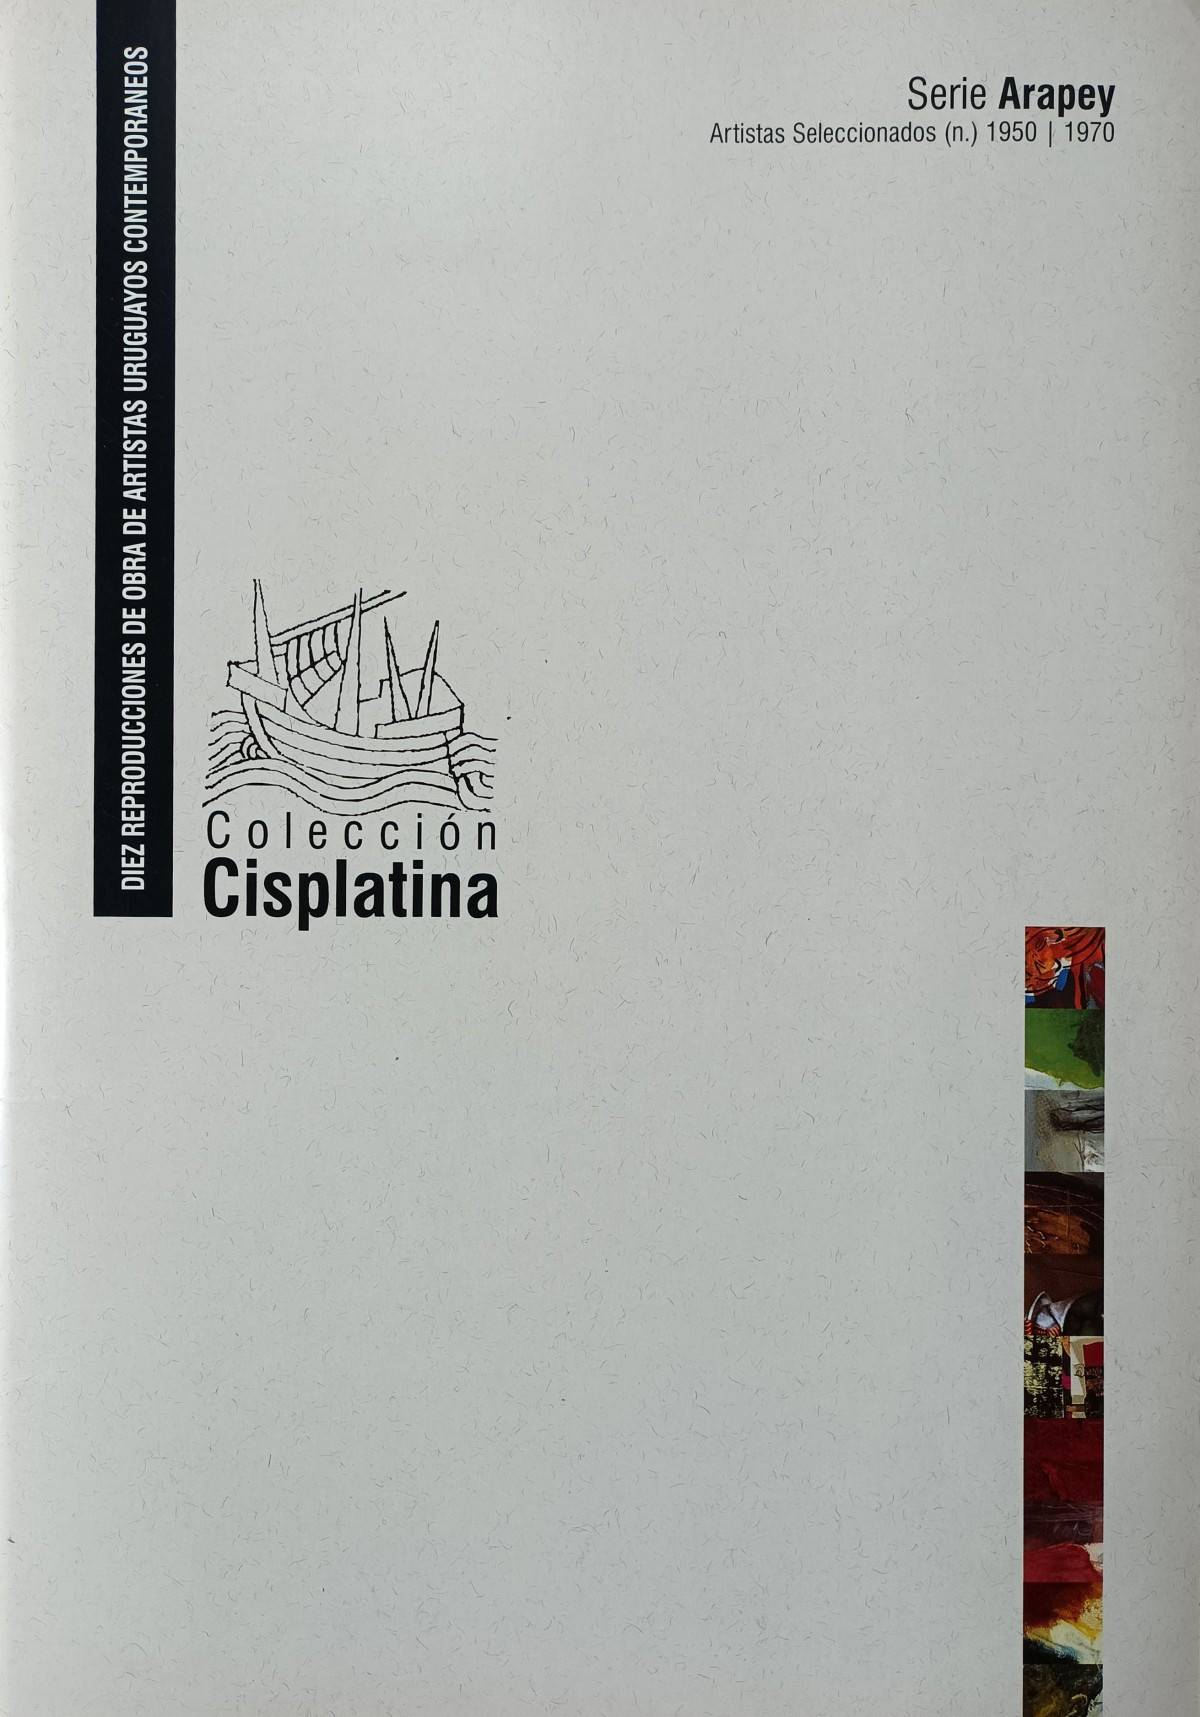 Carpeta Cisplatina : Reproducciones Fotográficas Serie Arapey,  . Artistas varios. Impreso.  43 x 29 cm. Nº inv. A481.